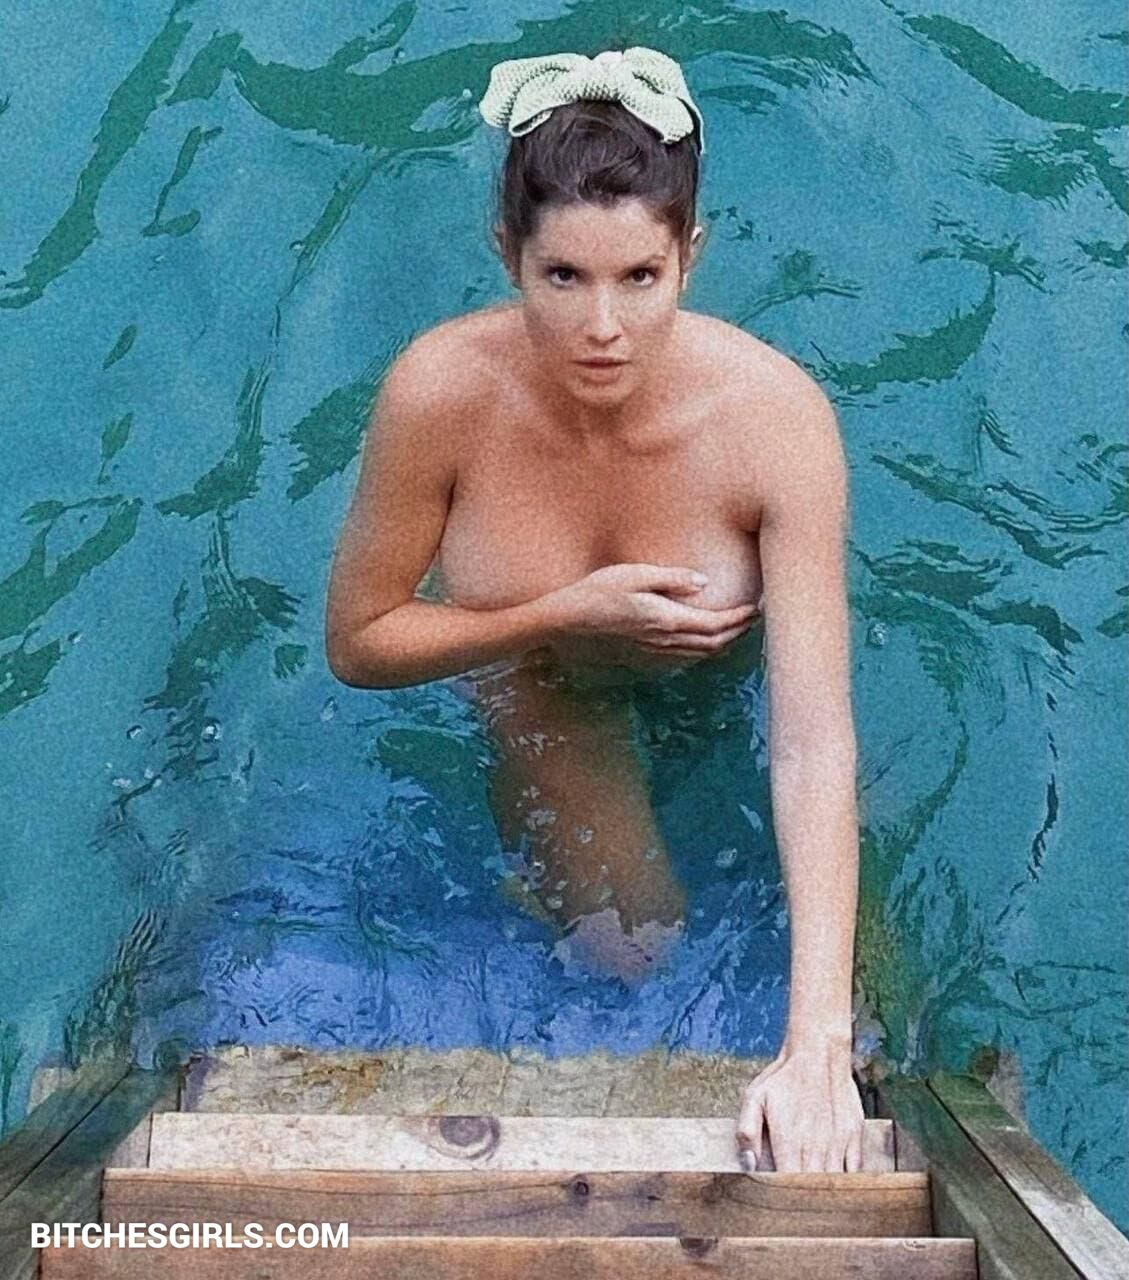 Amanda cerny leaked nudes